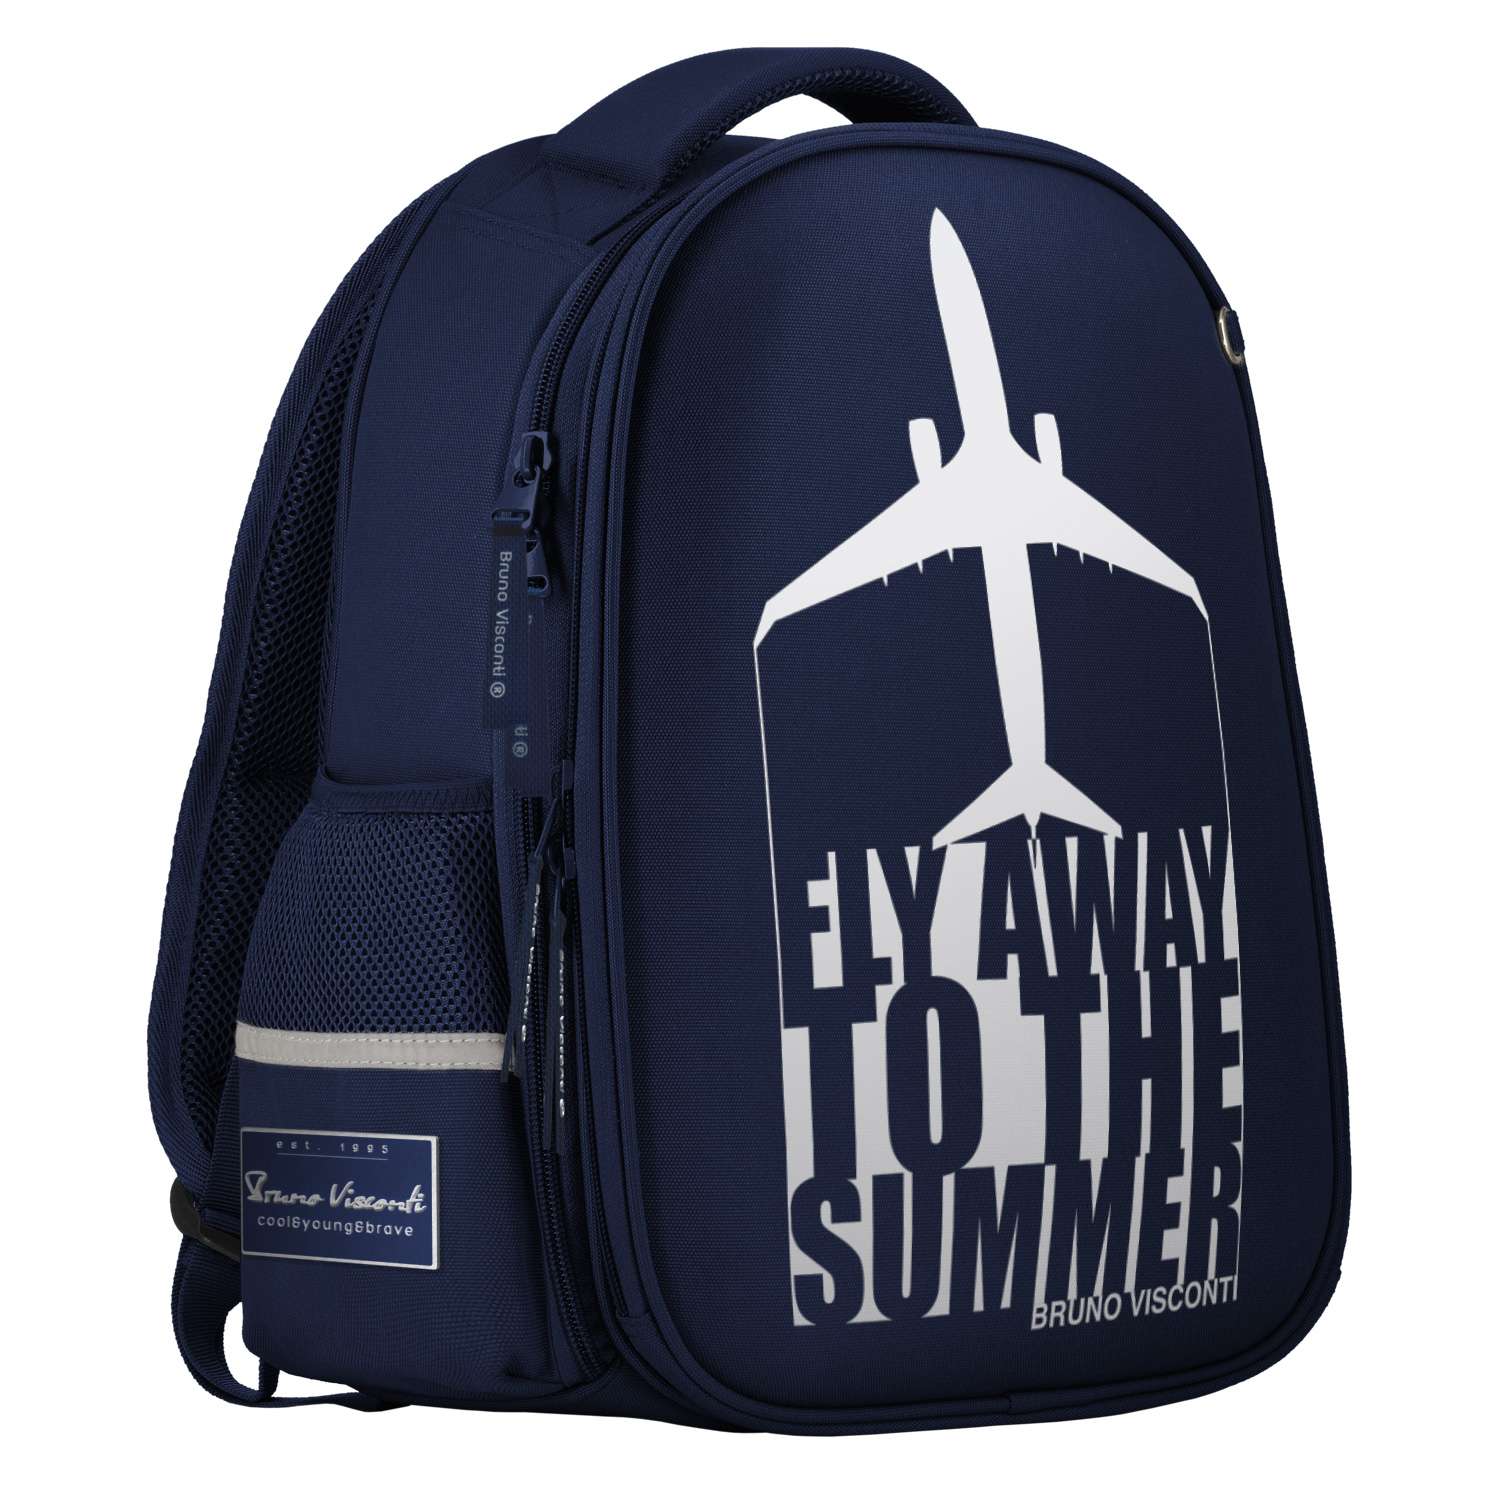 Рюкзак школьный Bruno Visconti синий с эргономичной спинкой Fly away - фото 1